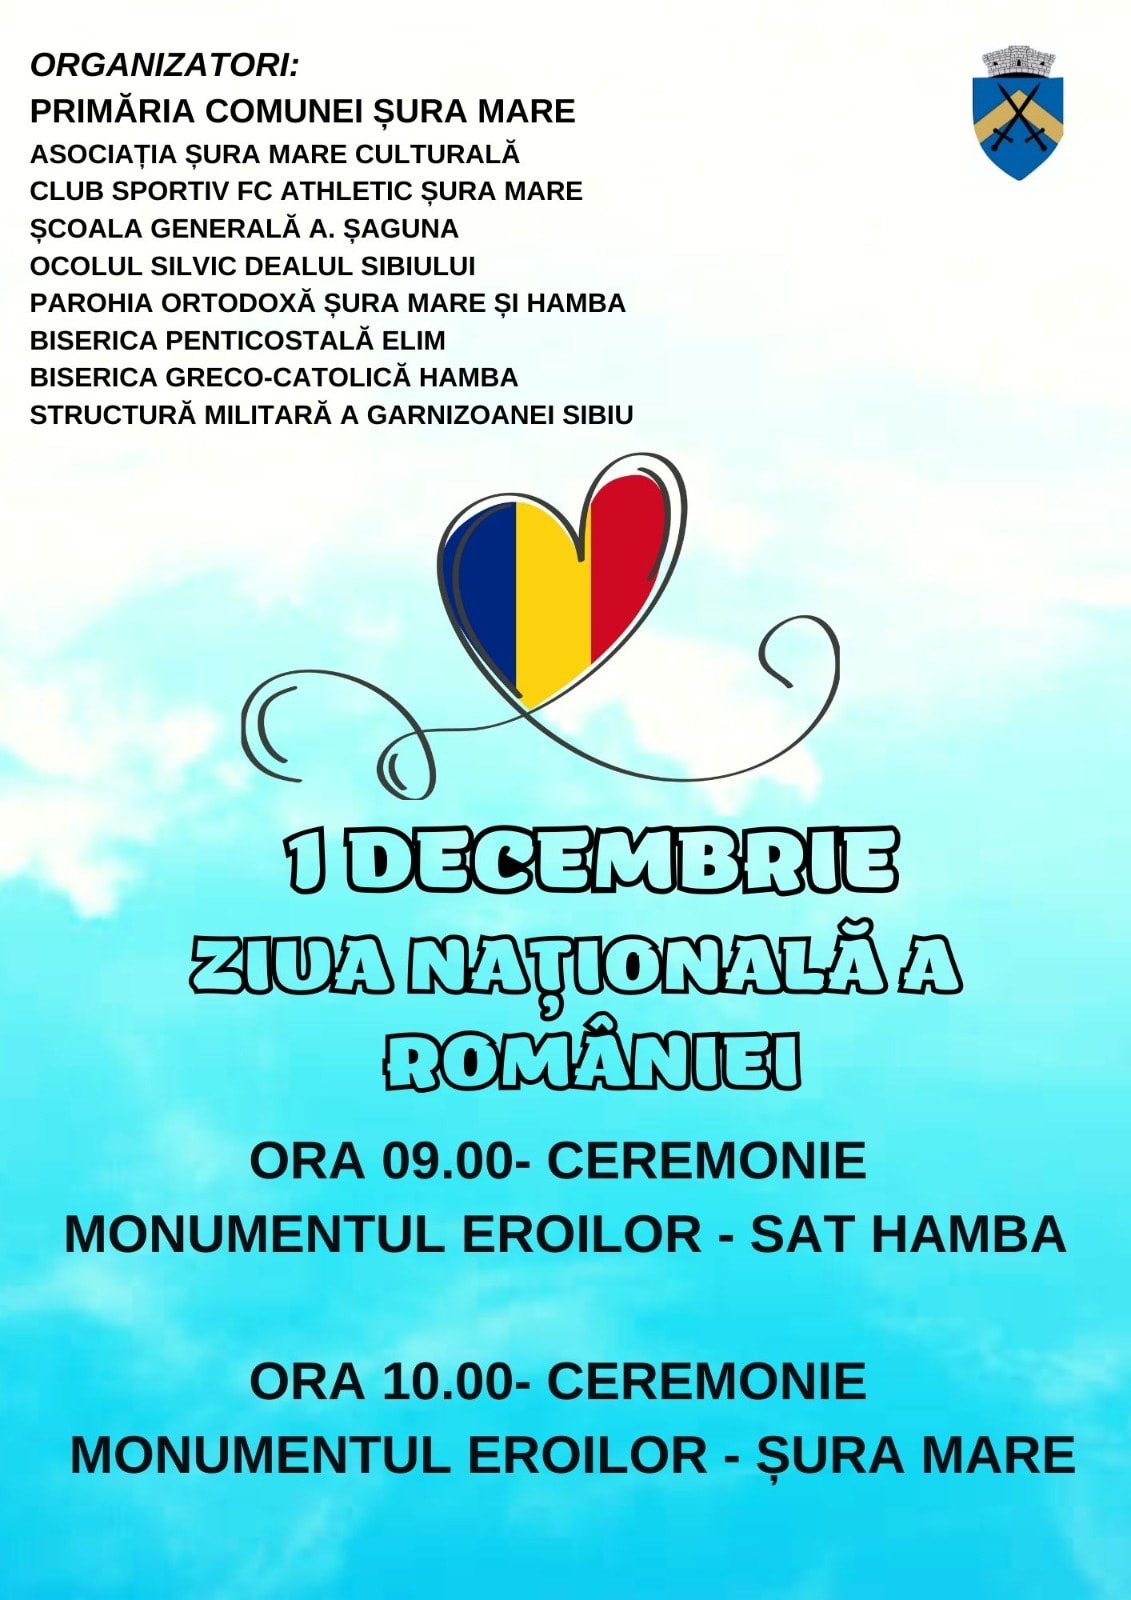 Primăria Comunei Șura Mare: Vă așteptăm pe 1 decembrie la sărbătoarea noastră, a ROMÂNILOR!